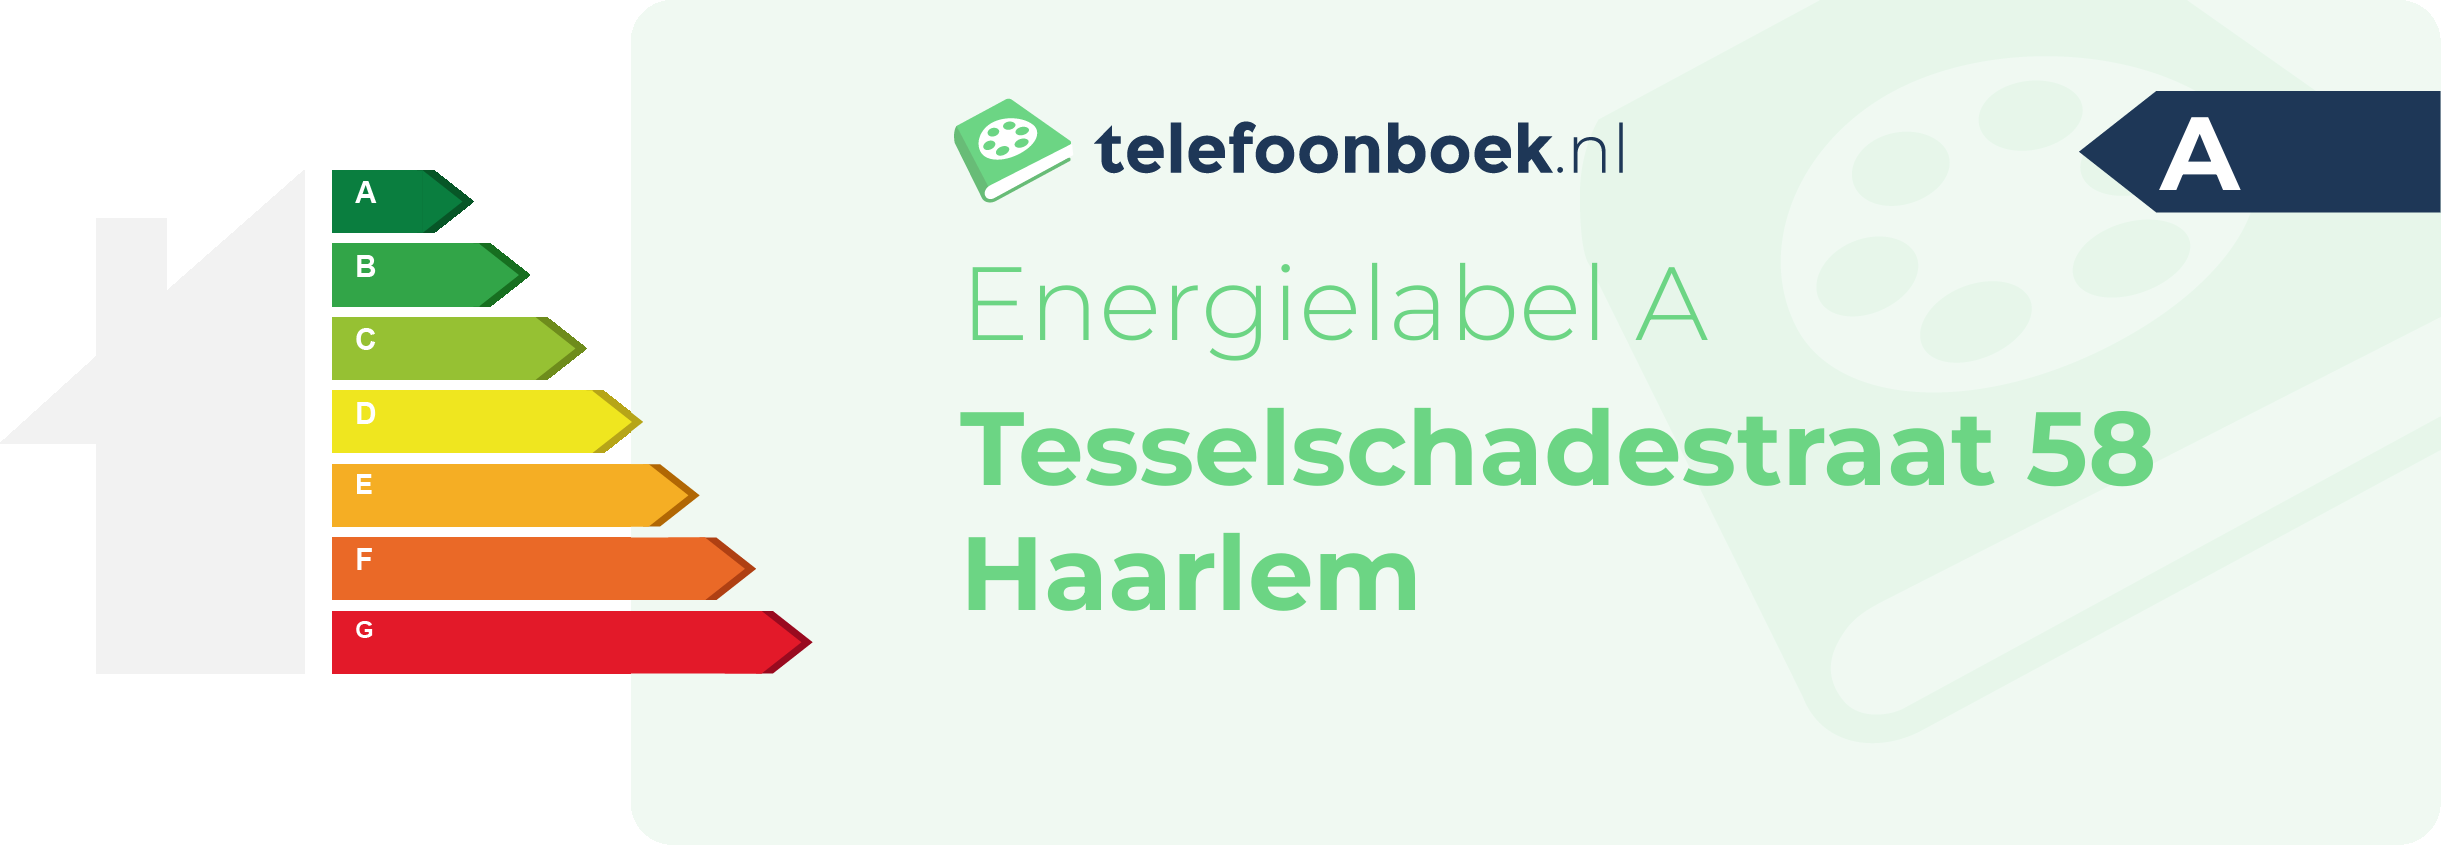 Energielabel Tesselschadestraat 58 Haarlem